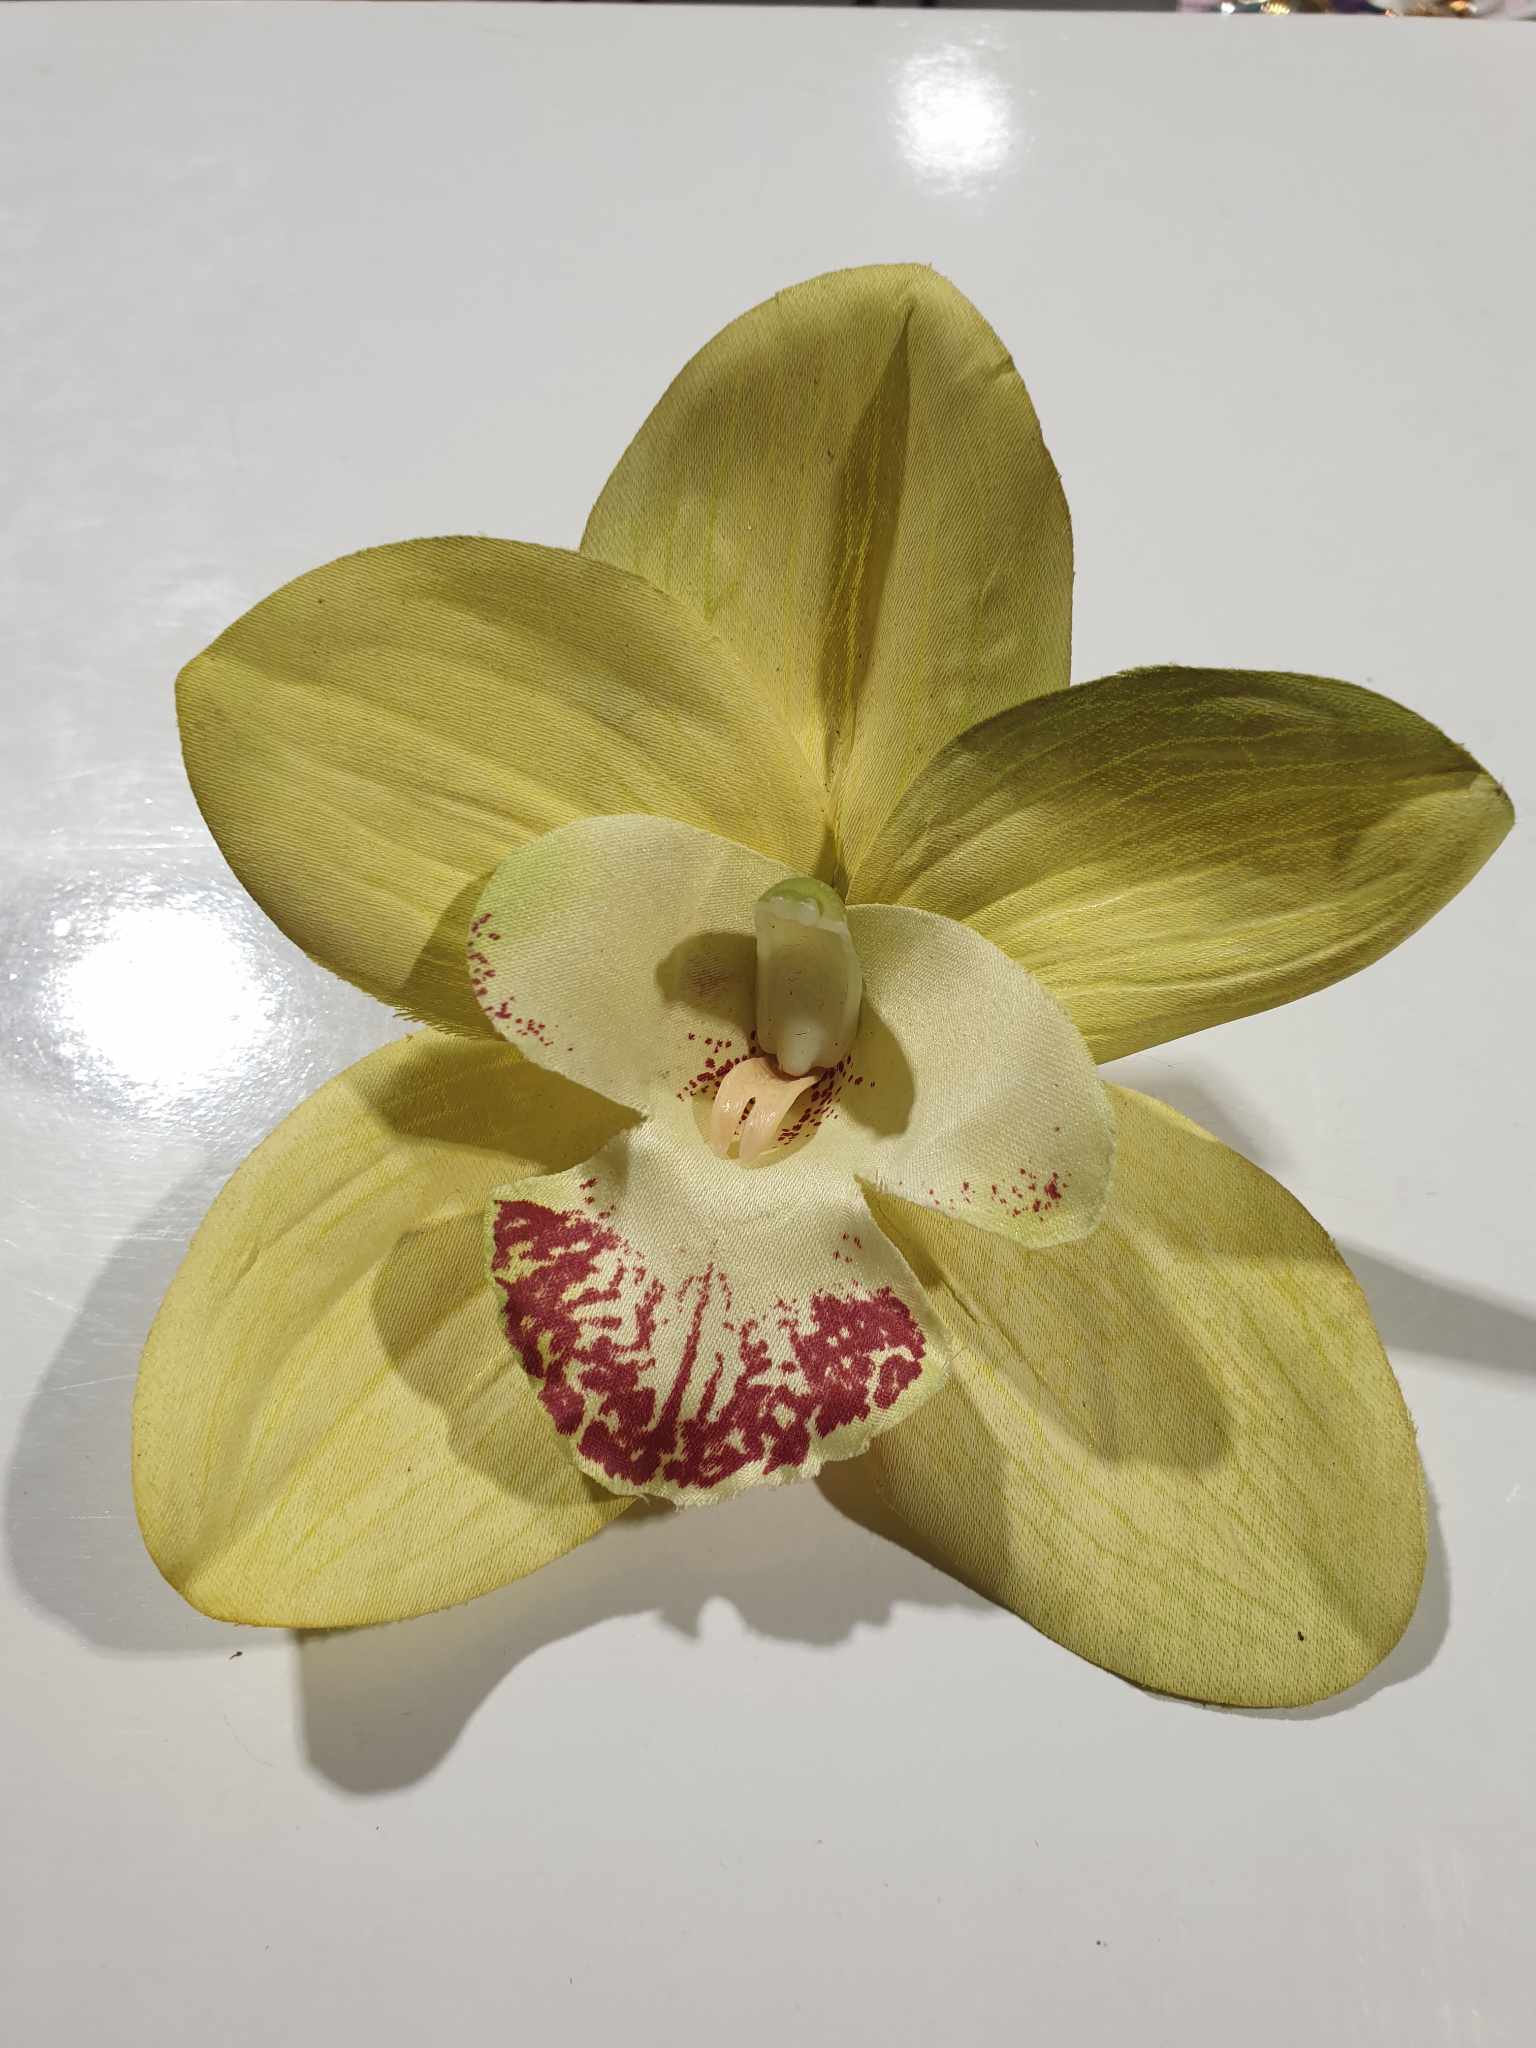 FRANTASY ISLAND Single Small Cymbidium Orchid Hair Flower